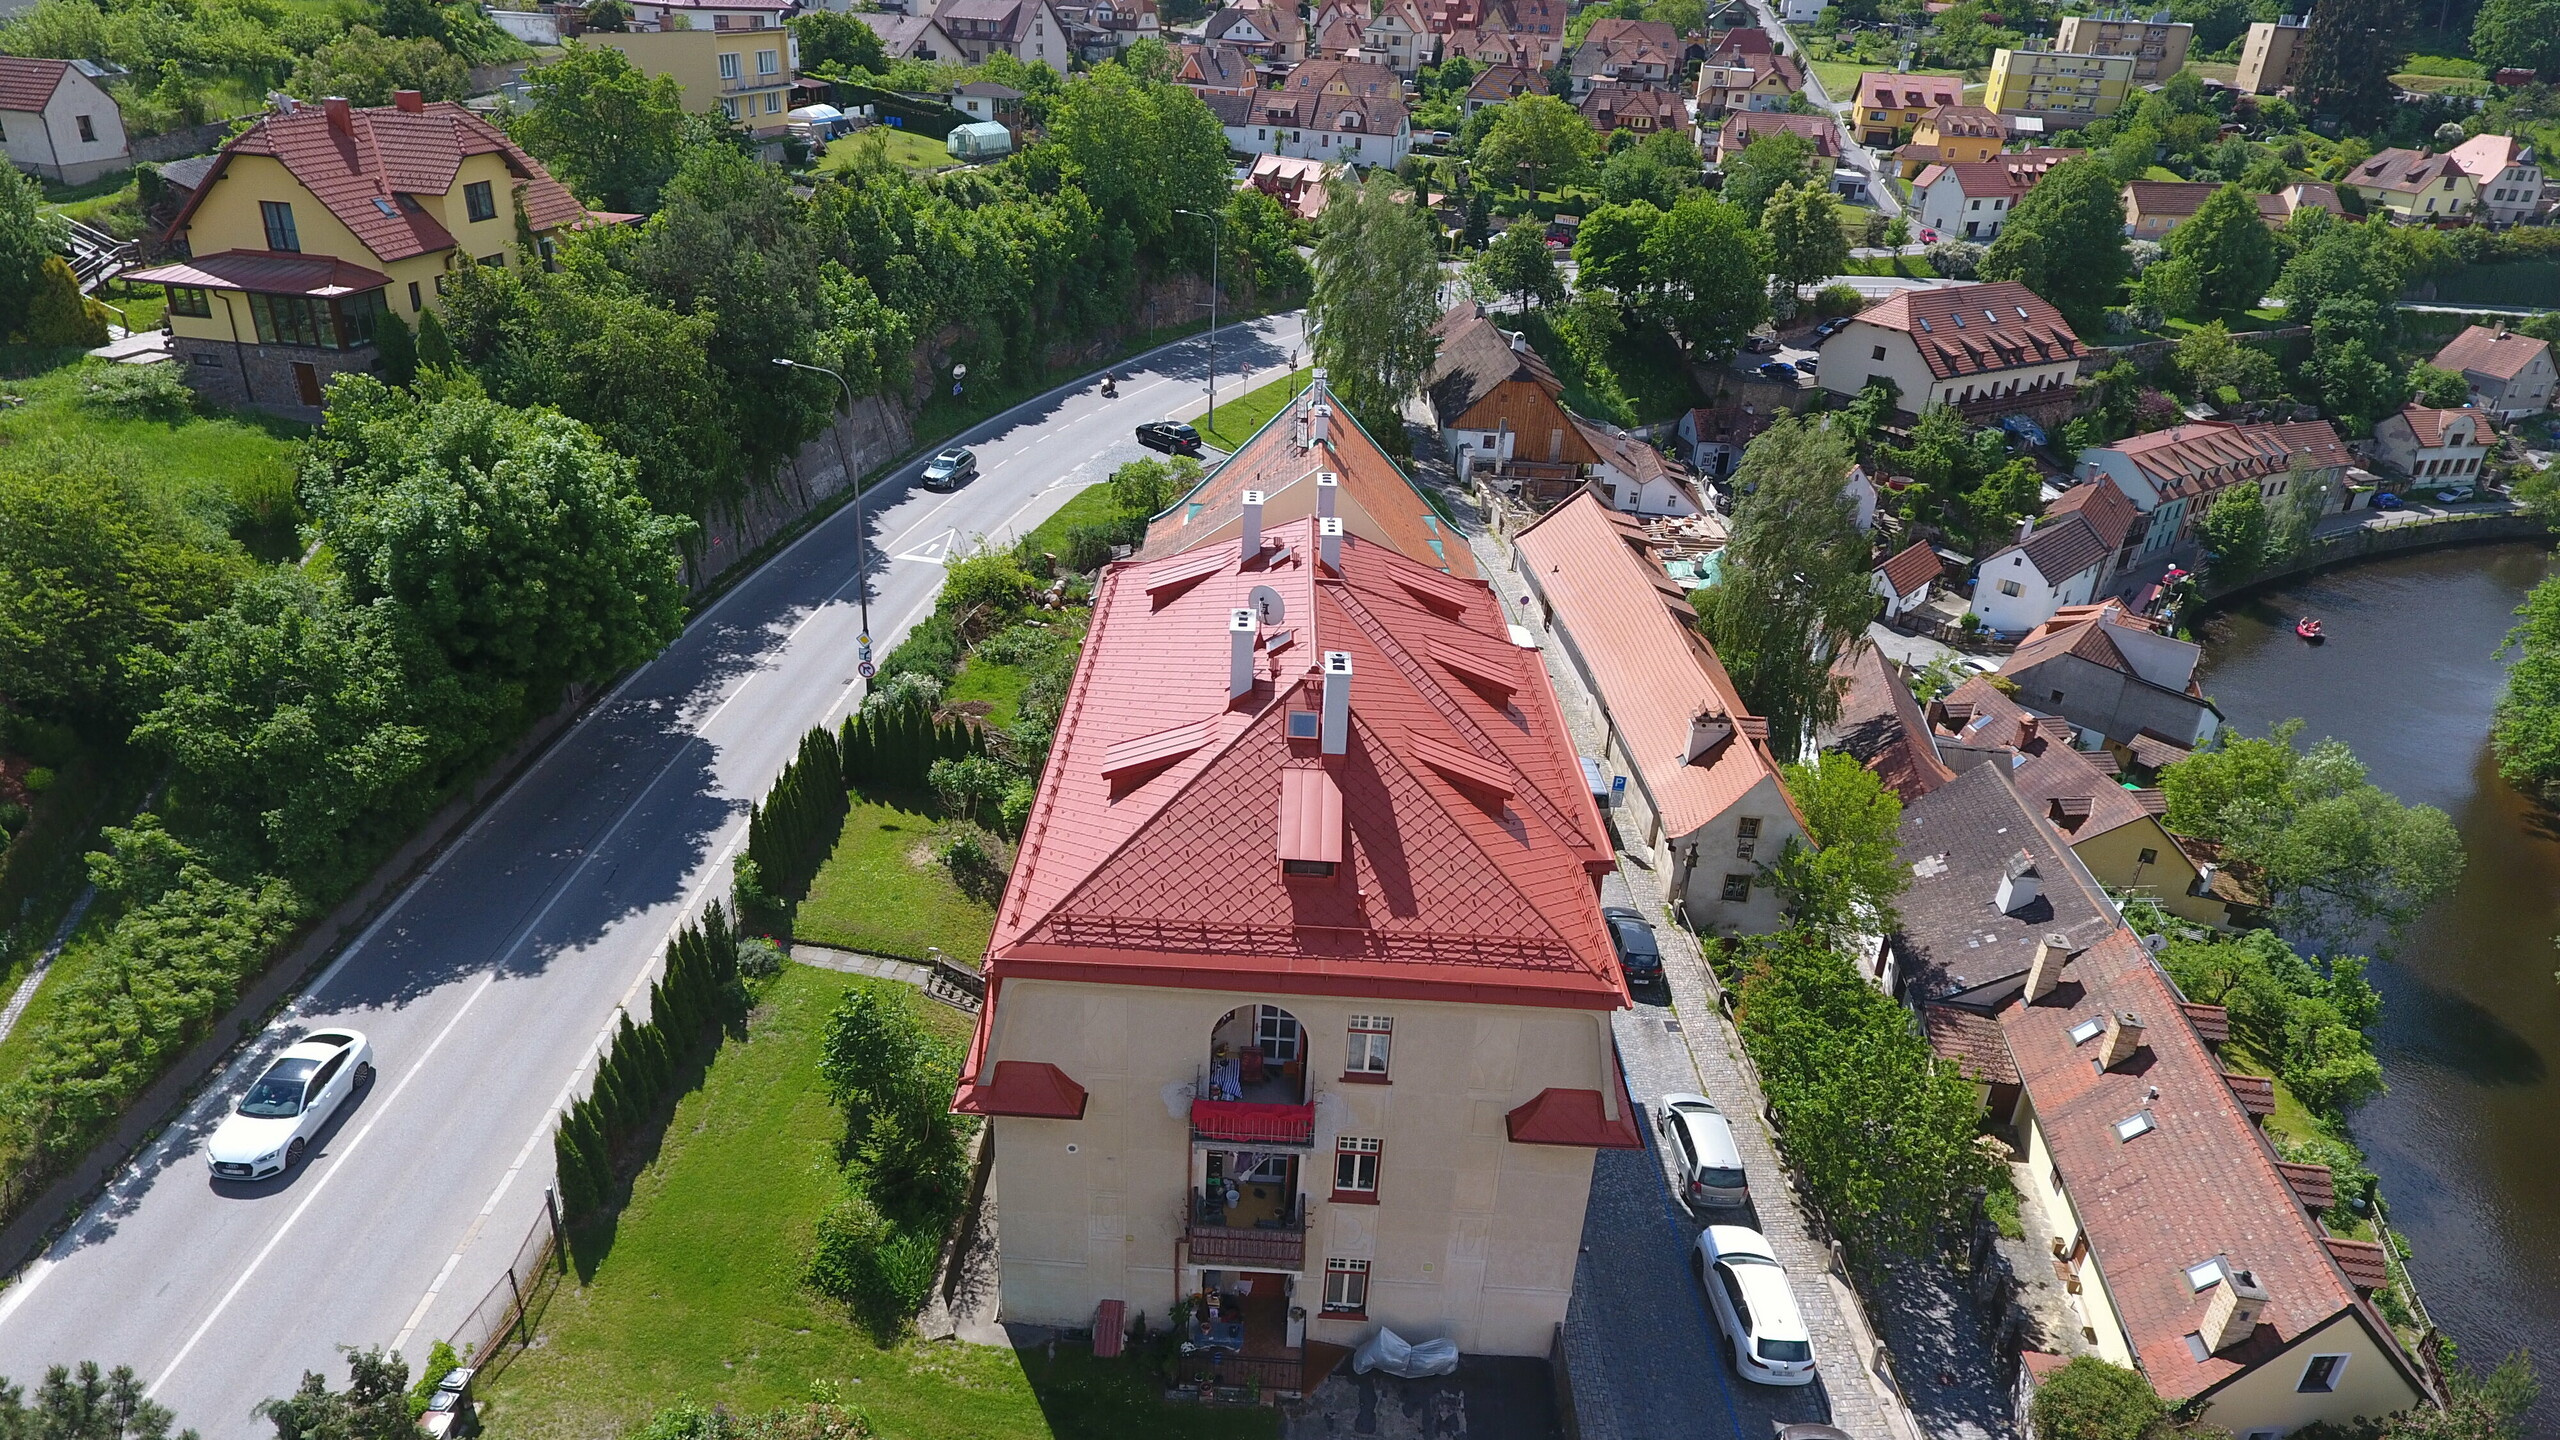 Pohled z výšky na historický dům se zrekonstruovanou střechou